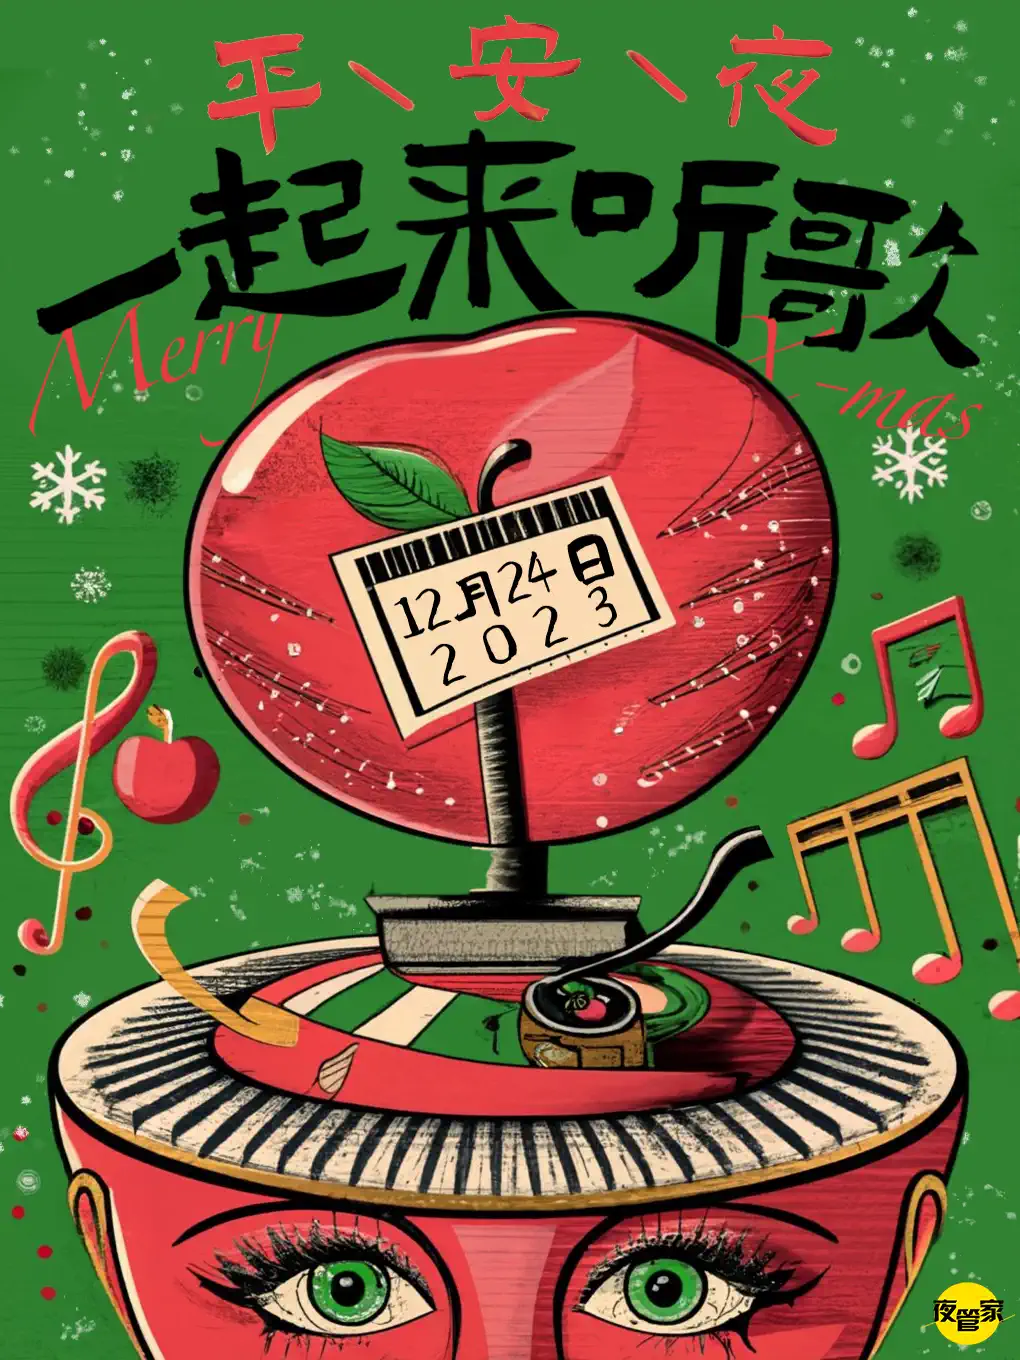 上海平安夜一起来听歌——与crush一起燃燥圣诞！钟声响起音乐狂欢！